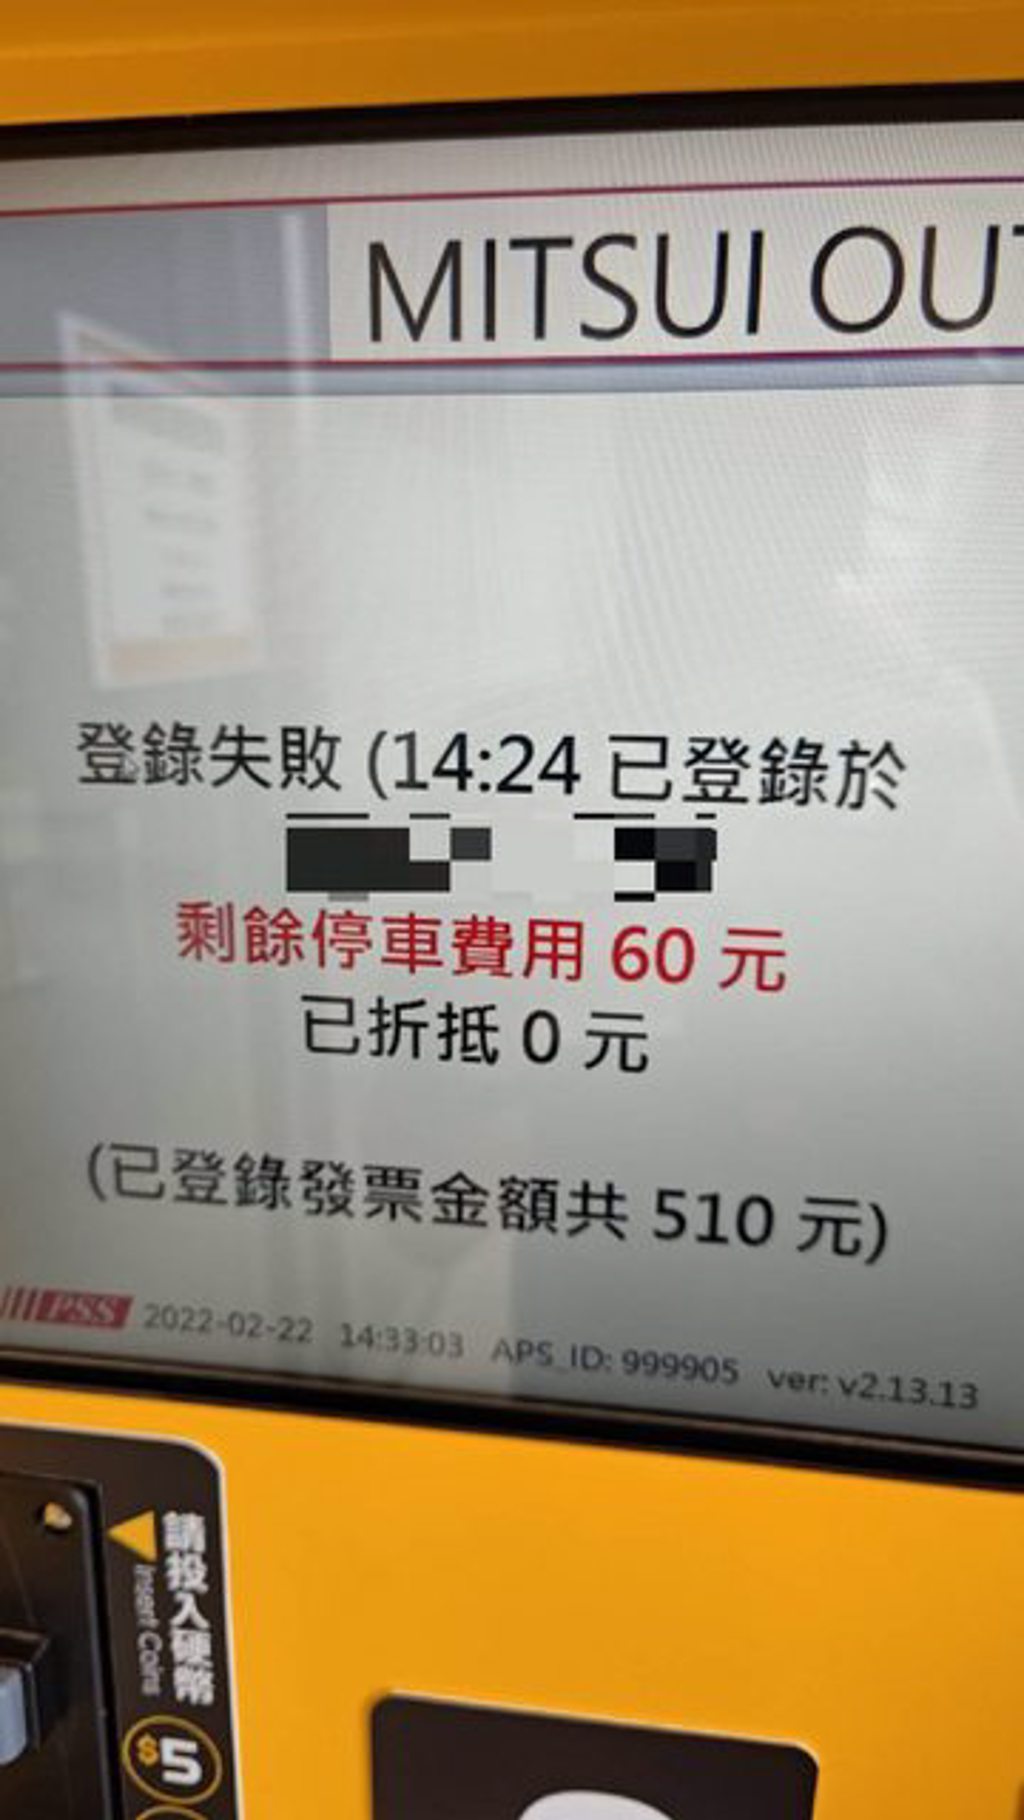 有網友抱怨他到台南三井購物的停車體驗 (圖/翻攝PTT)
